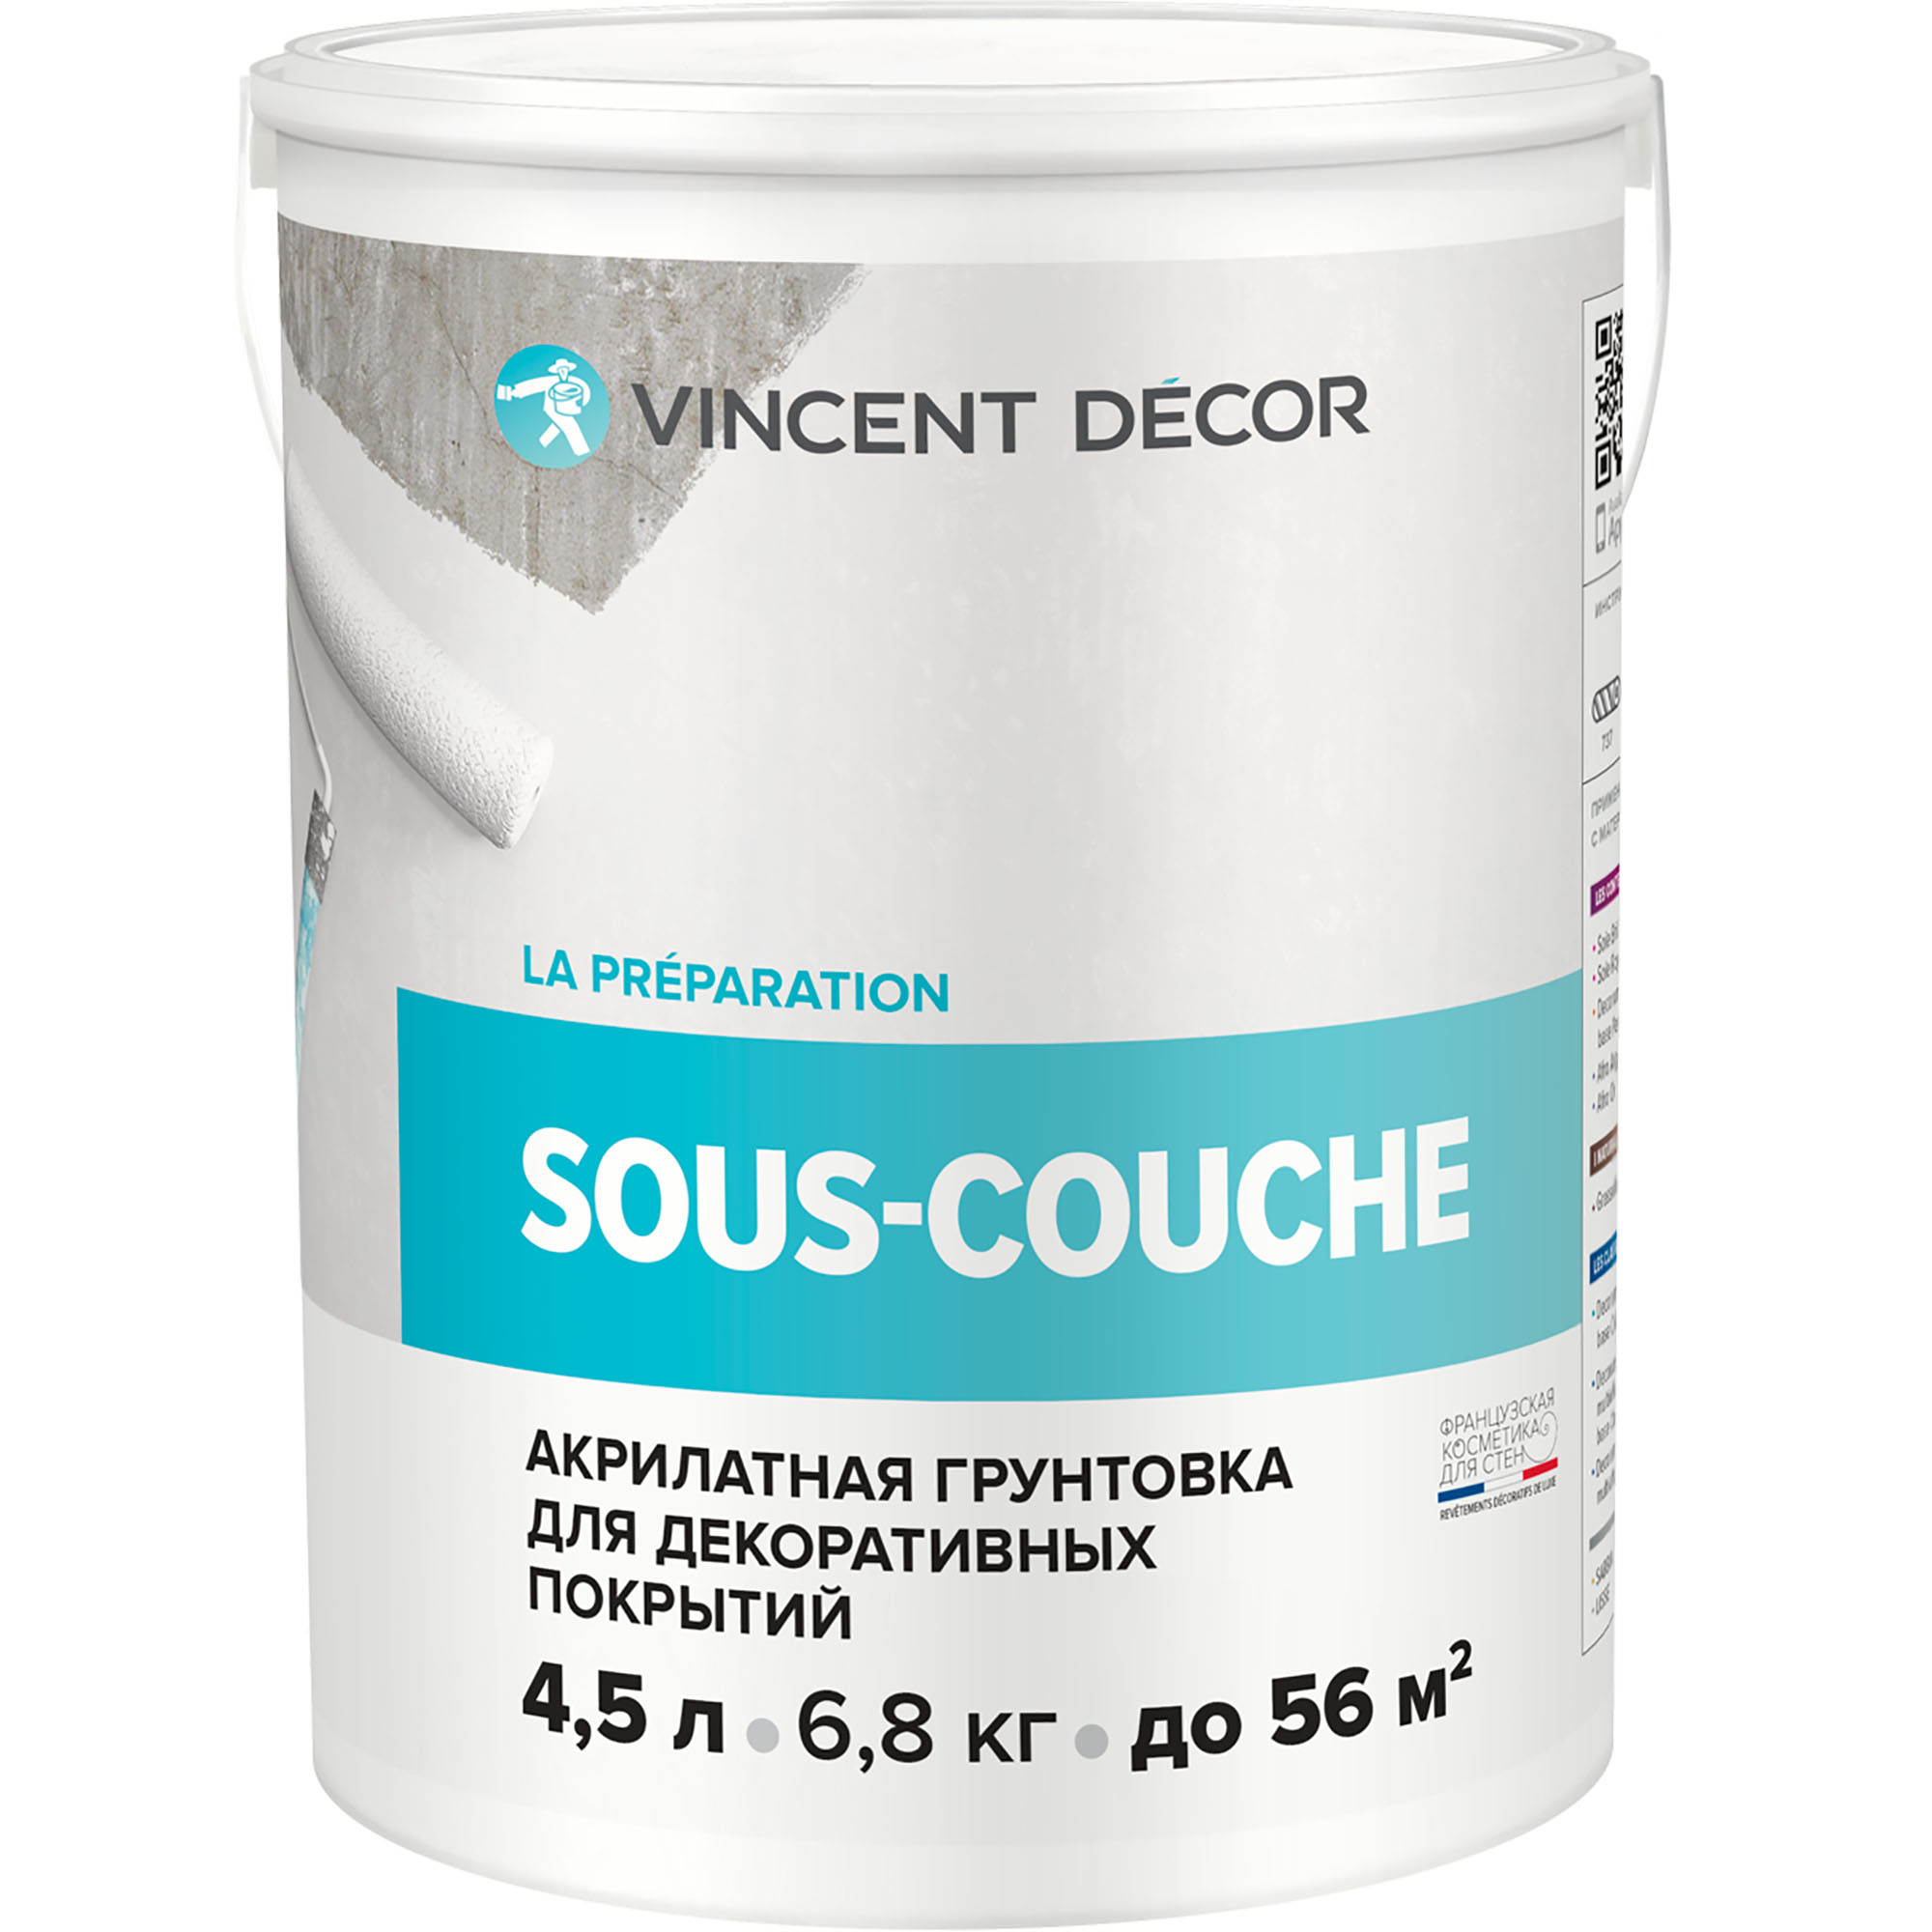 Грунтовка для декоративных покрытий Vincent Decor Sous-couche 4,5 л грунтовка изольту 0 48 кг vincent